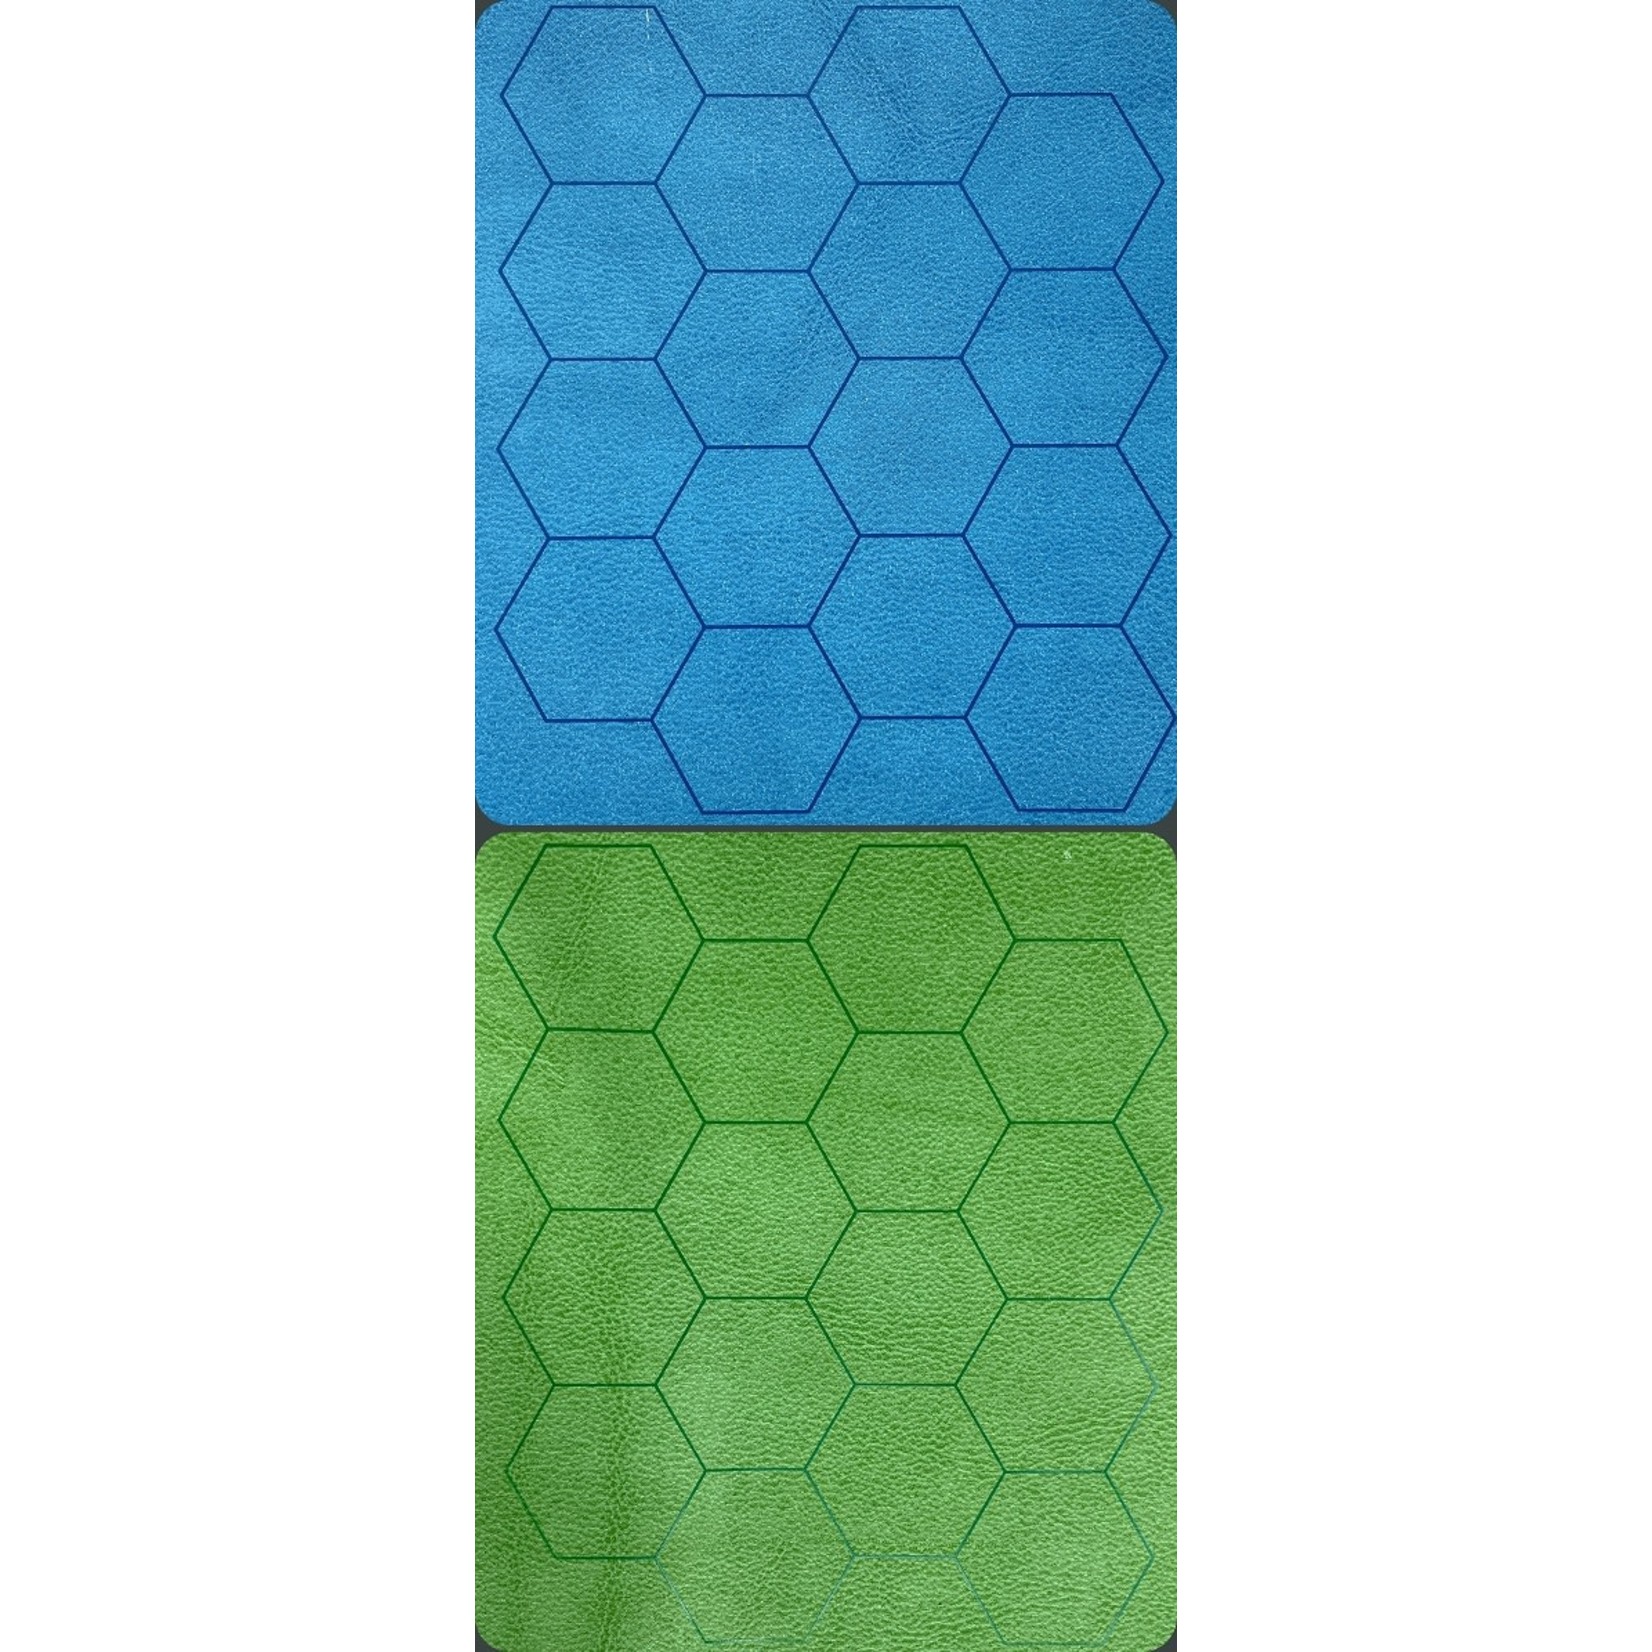 Chessex Battle Mat 97665 Megamat Hex 34.5x48 inch Reversible Blue Green